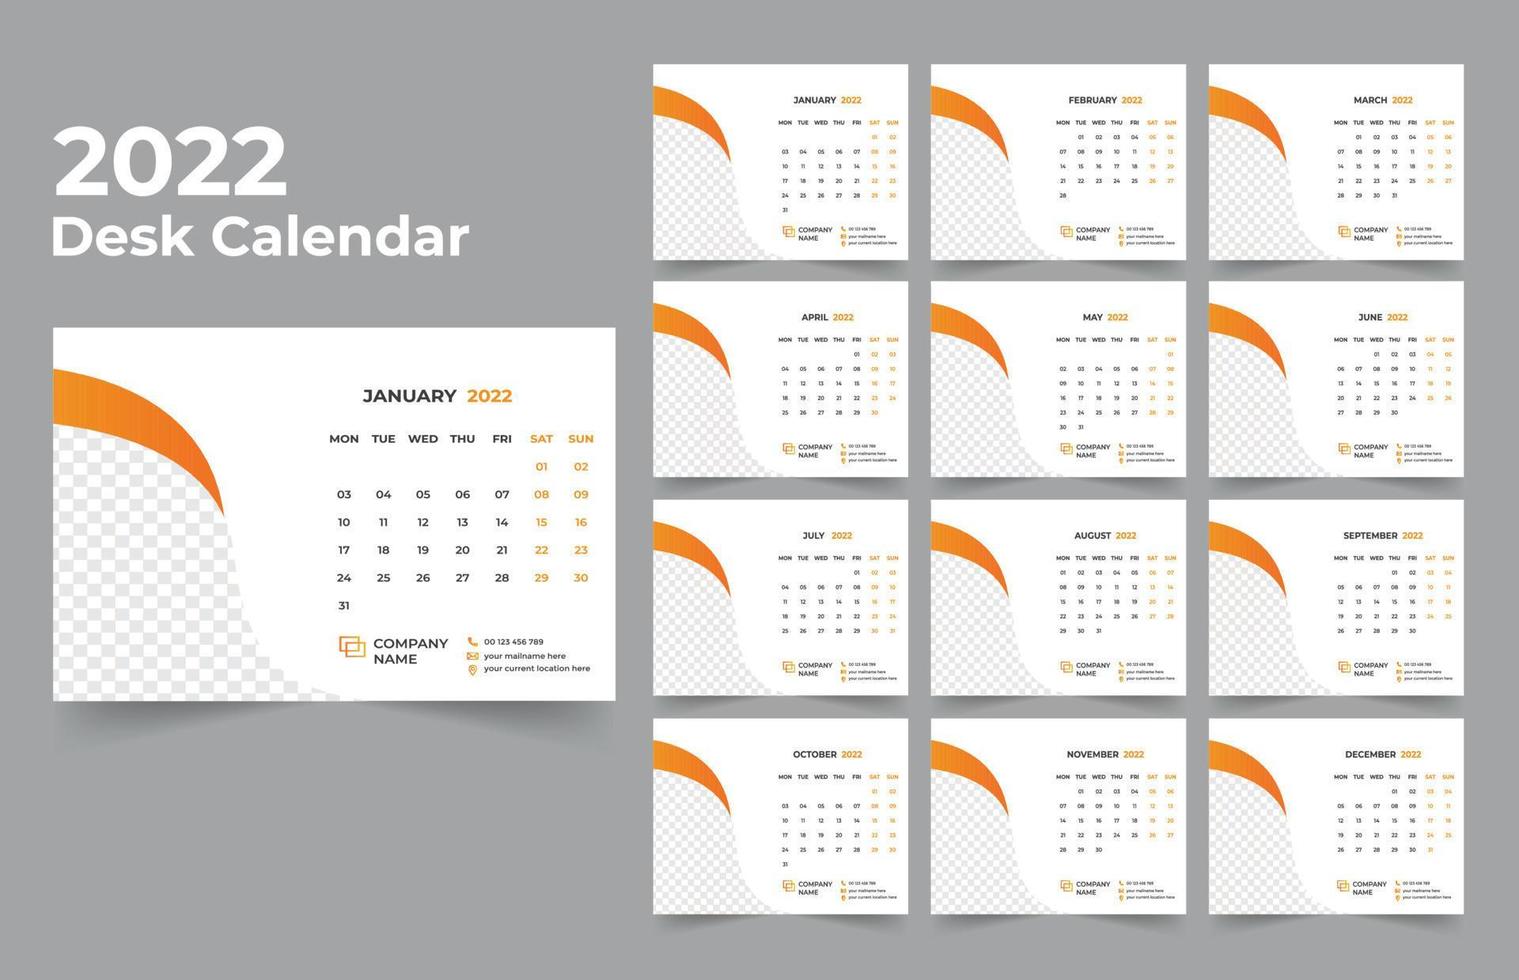 calendario da tavolo design 2022 set di modelli di 12 mesi, settimana inizia lunedì, design di cancelleria, pianificatore di calendario vettore